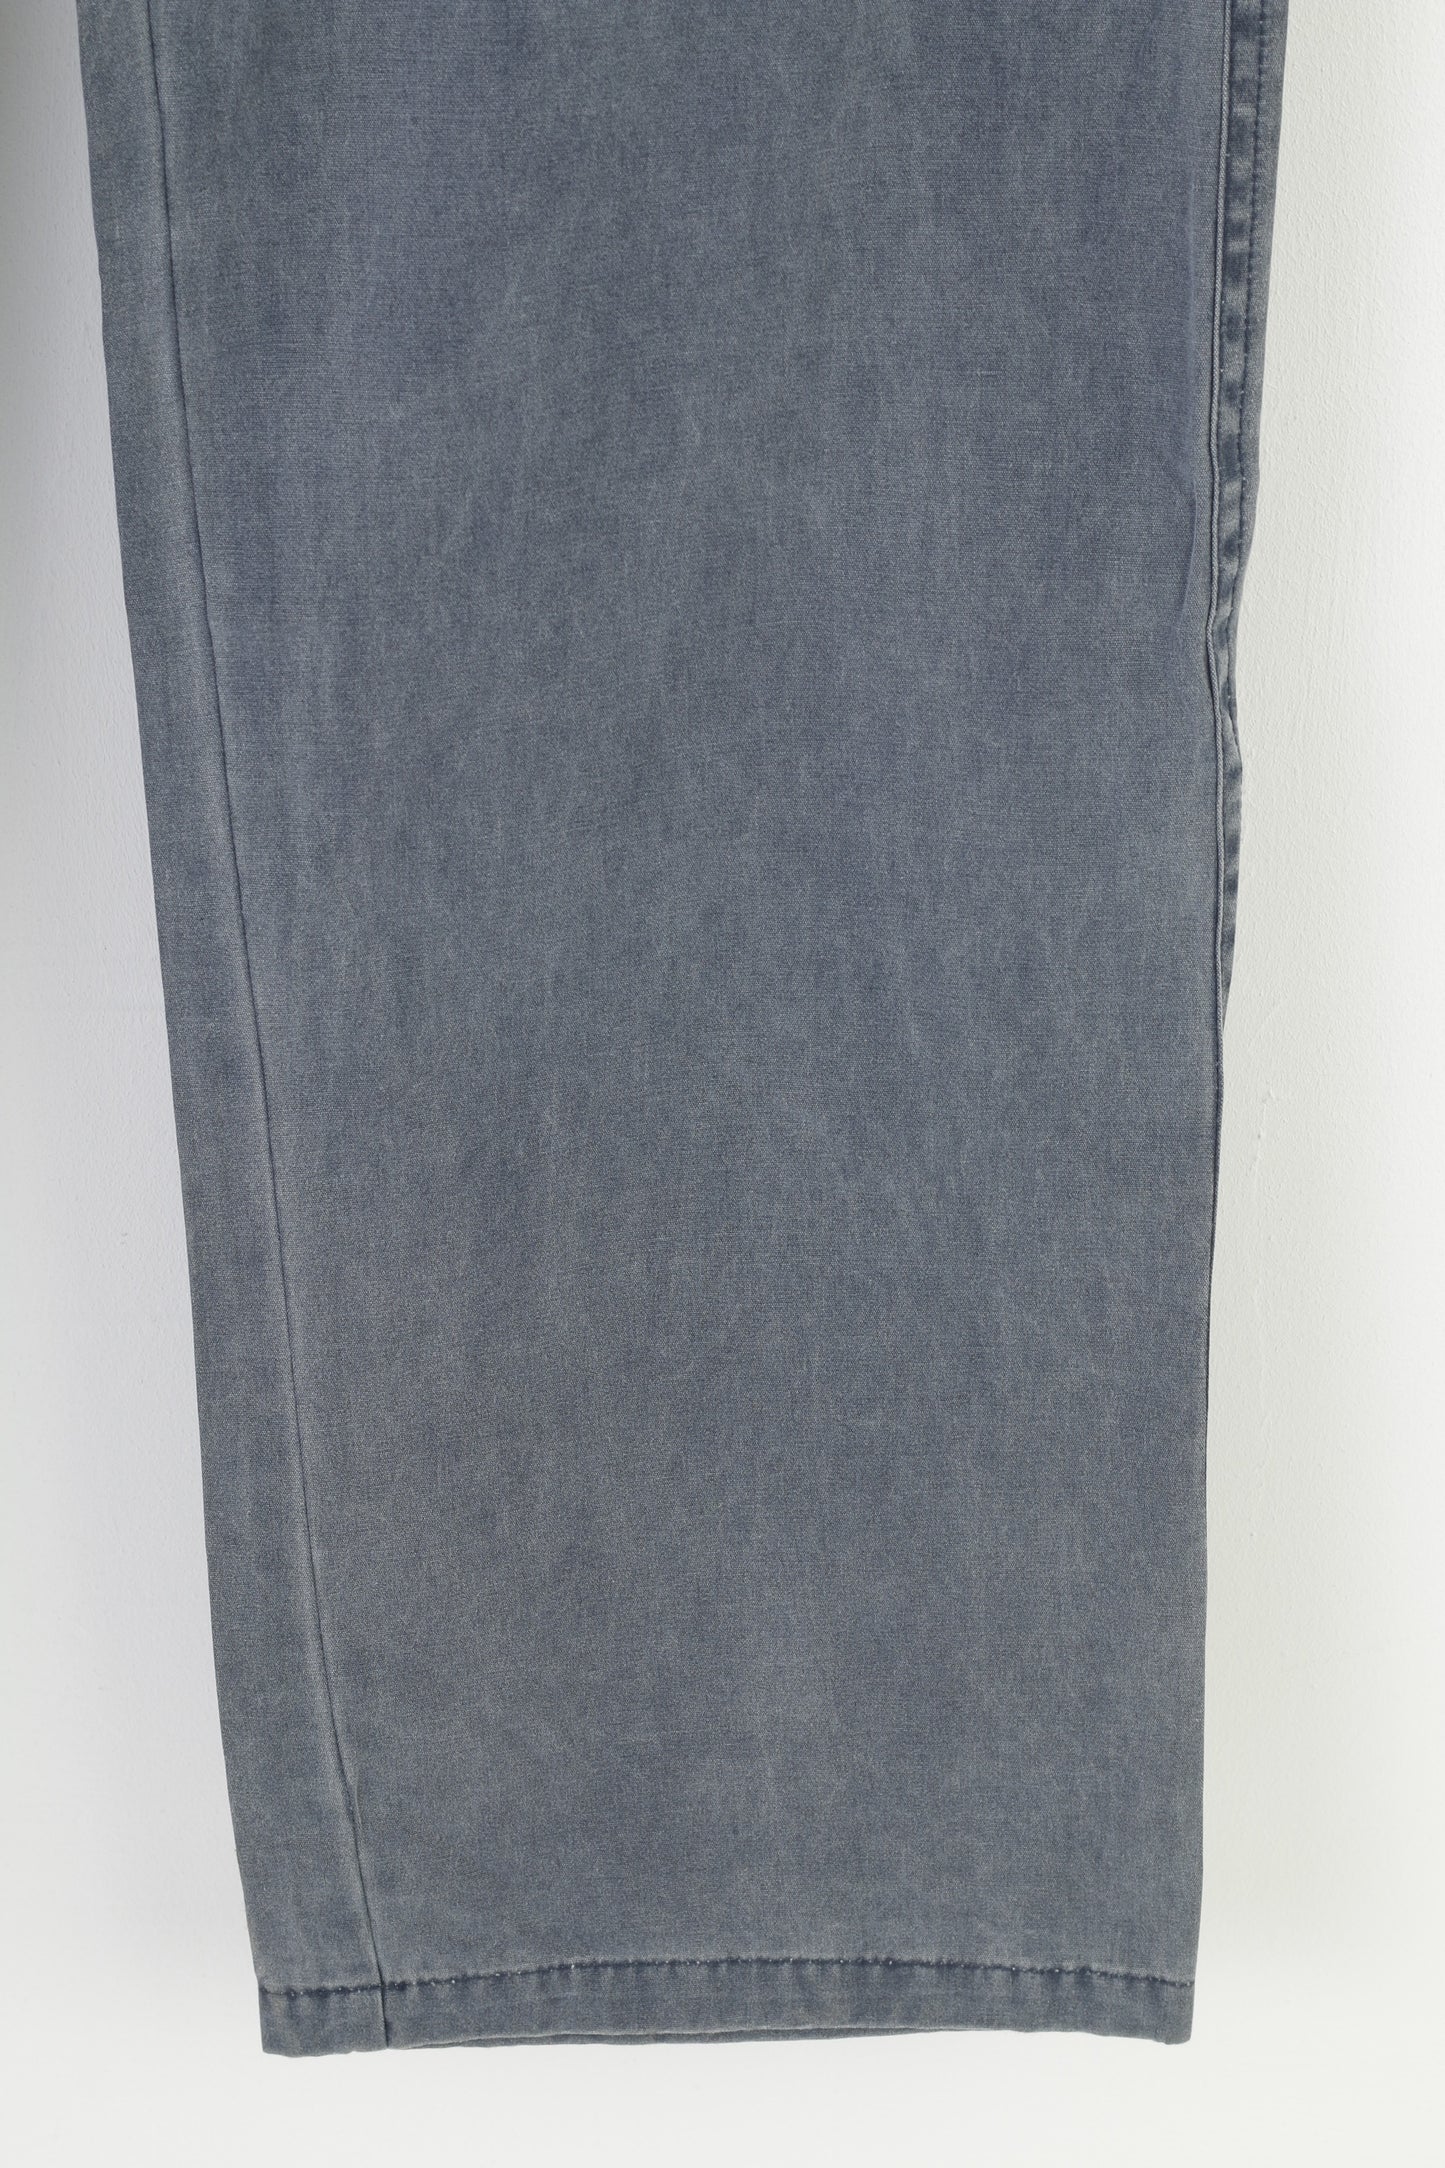 Bernardi Collection Homme 54 Pantalon Gris Coton Classique Jean Clair Pantalon Vintage 